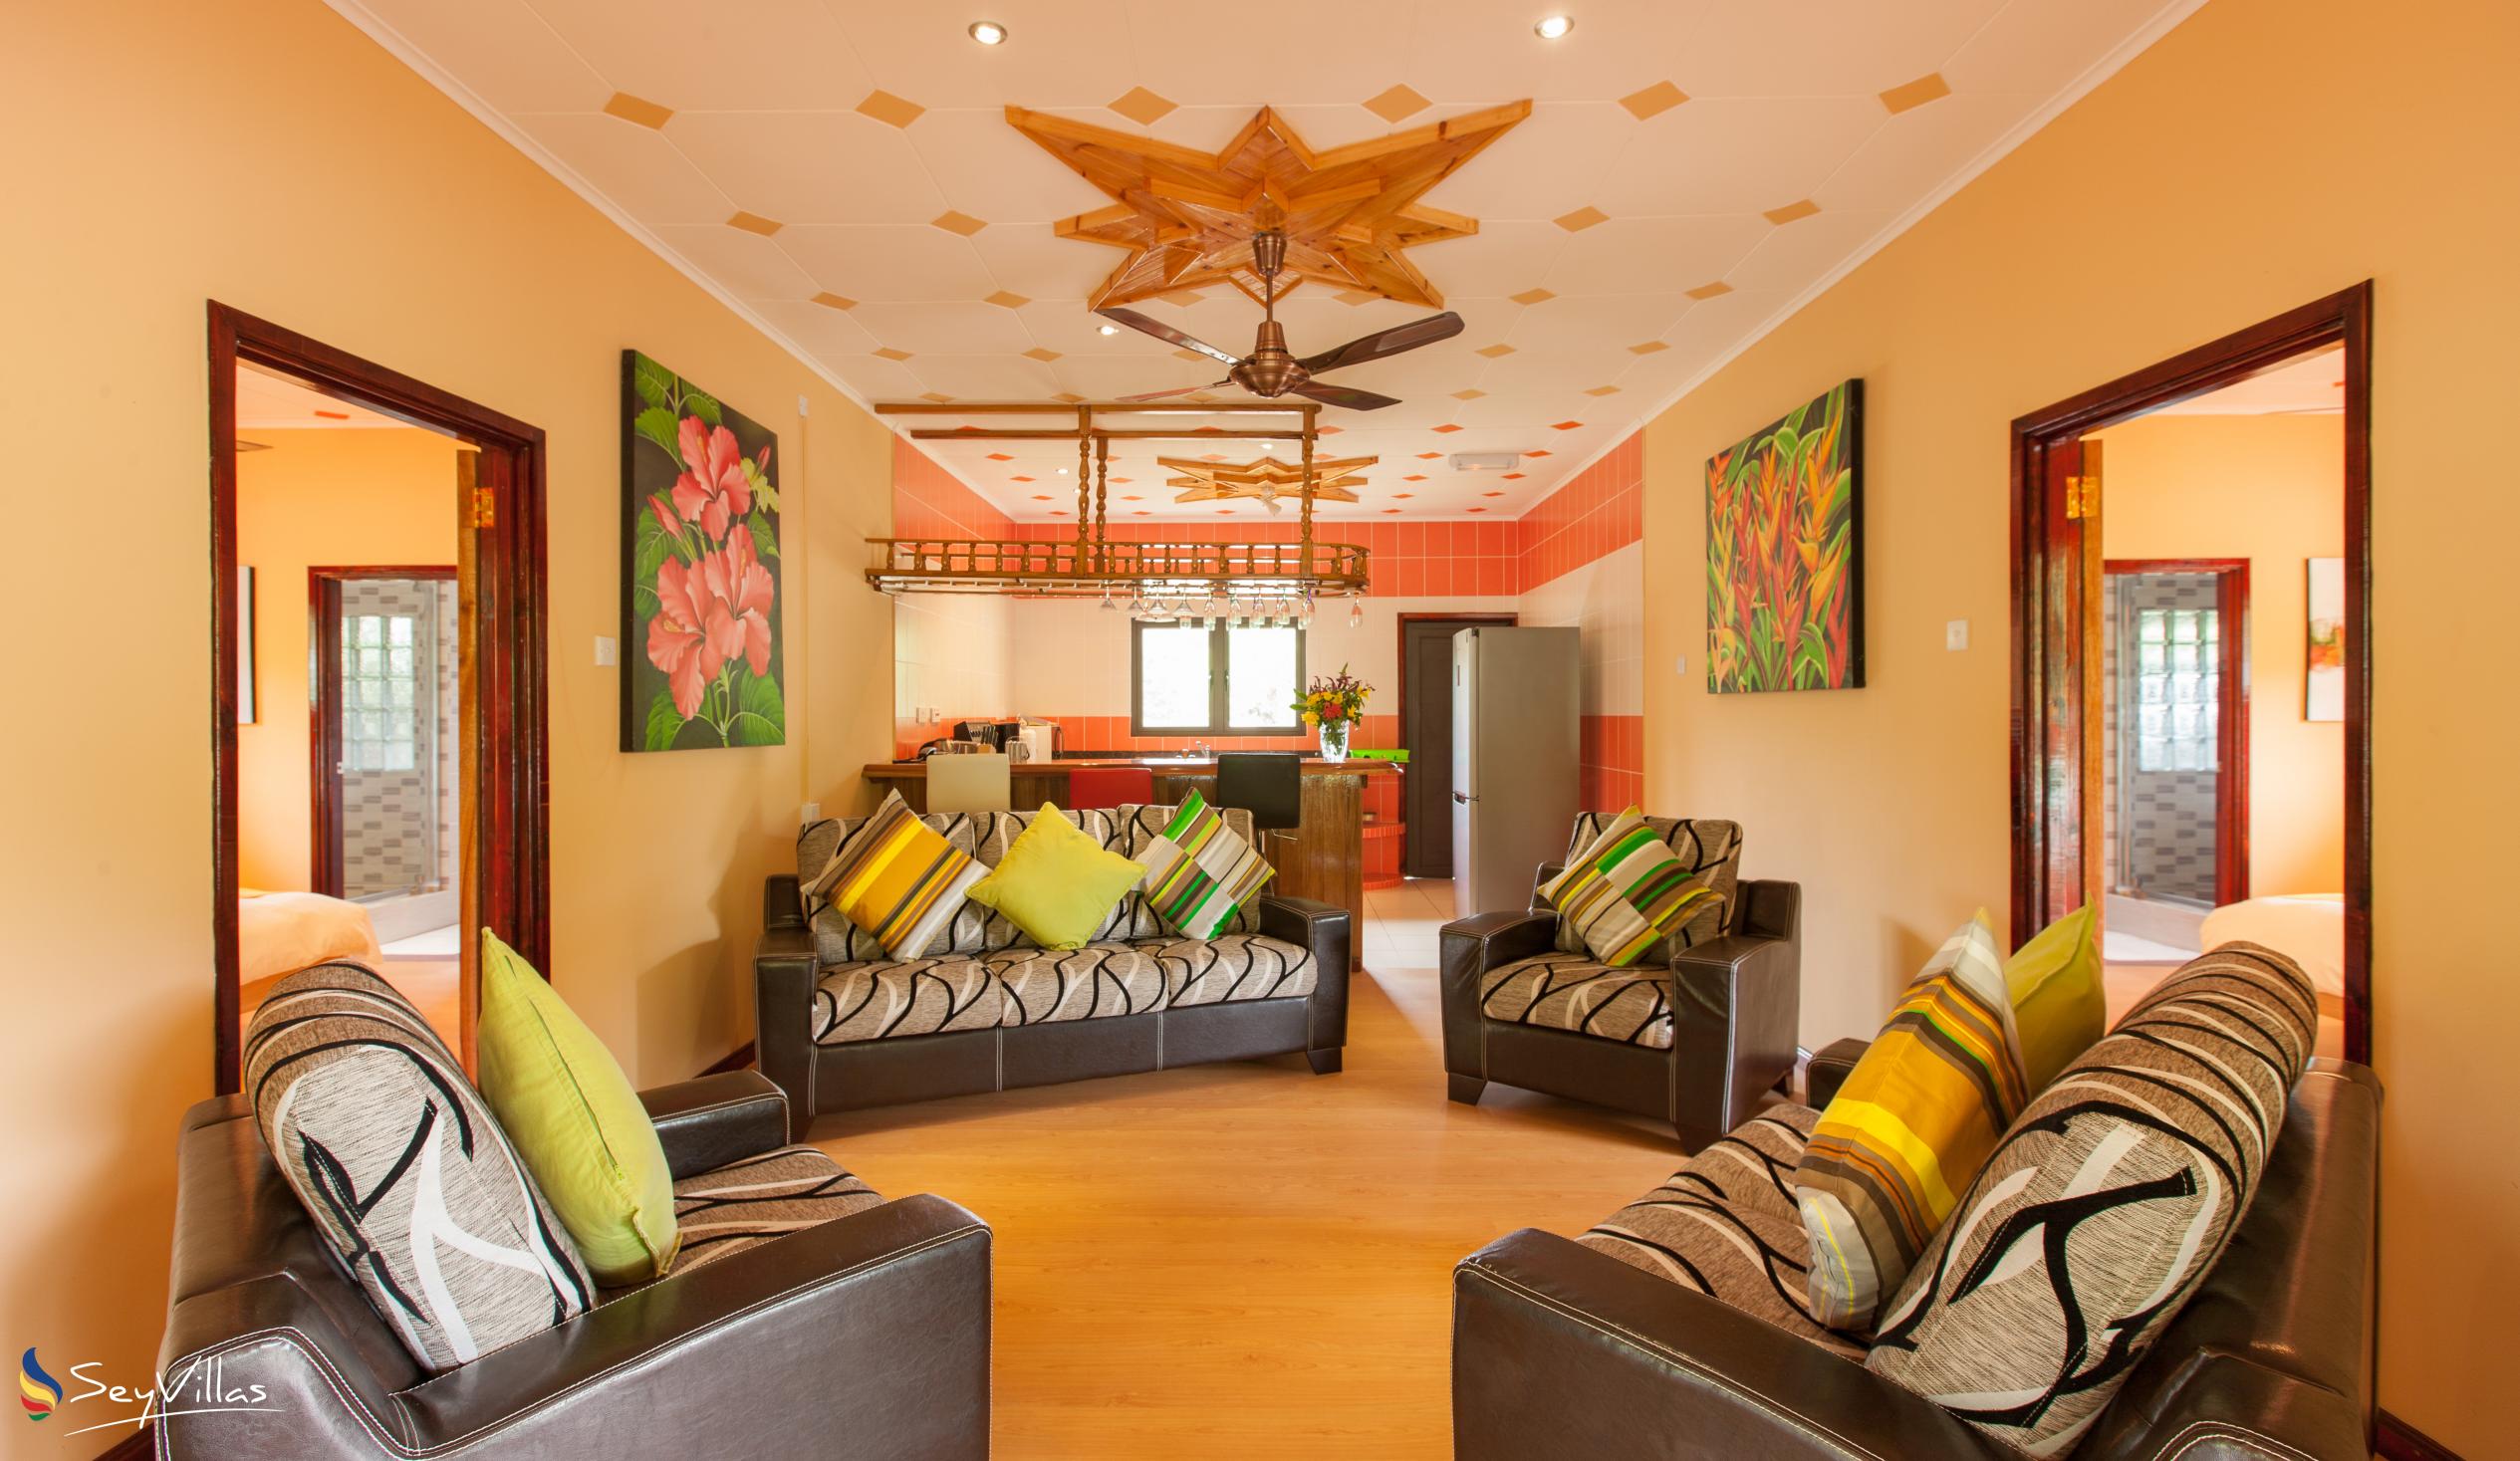 Photo 71: Casa de Leela - 2-Bedroom Luxury Bungalow with Private Plunge Pool - La Digue (Seychelles)